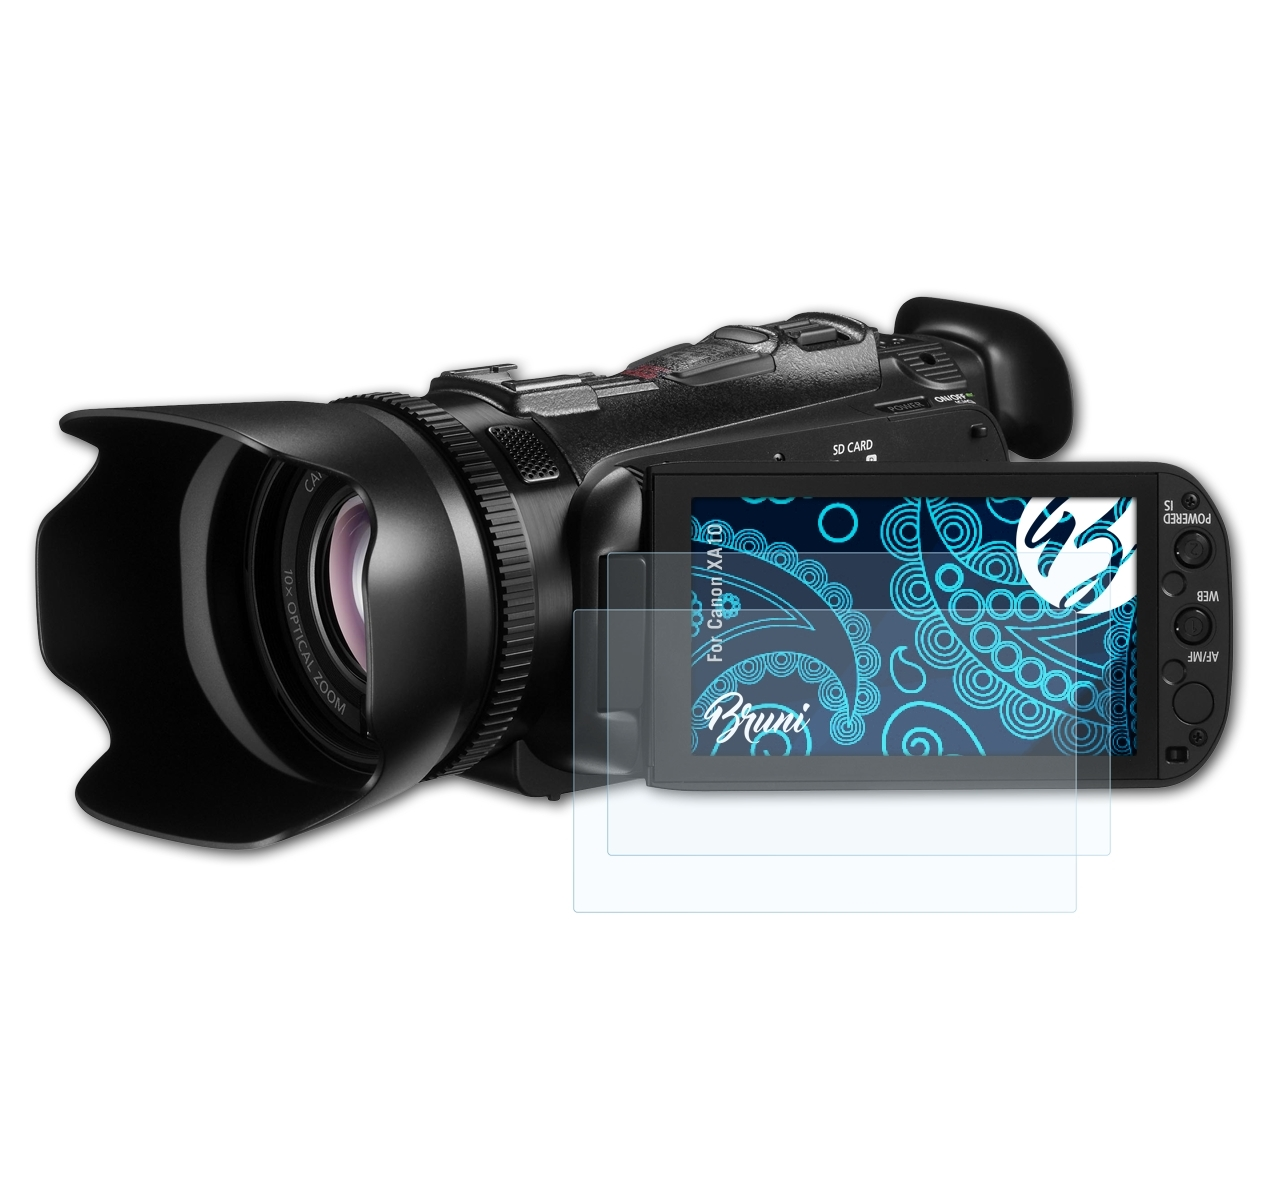 BRUNI 2x Basics-Clear Canon Schutzfolie(für XA10)